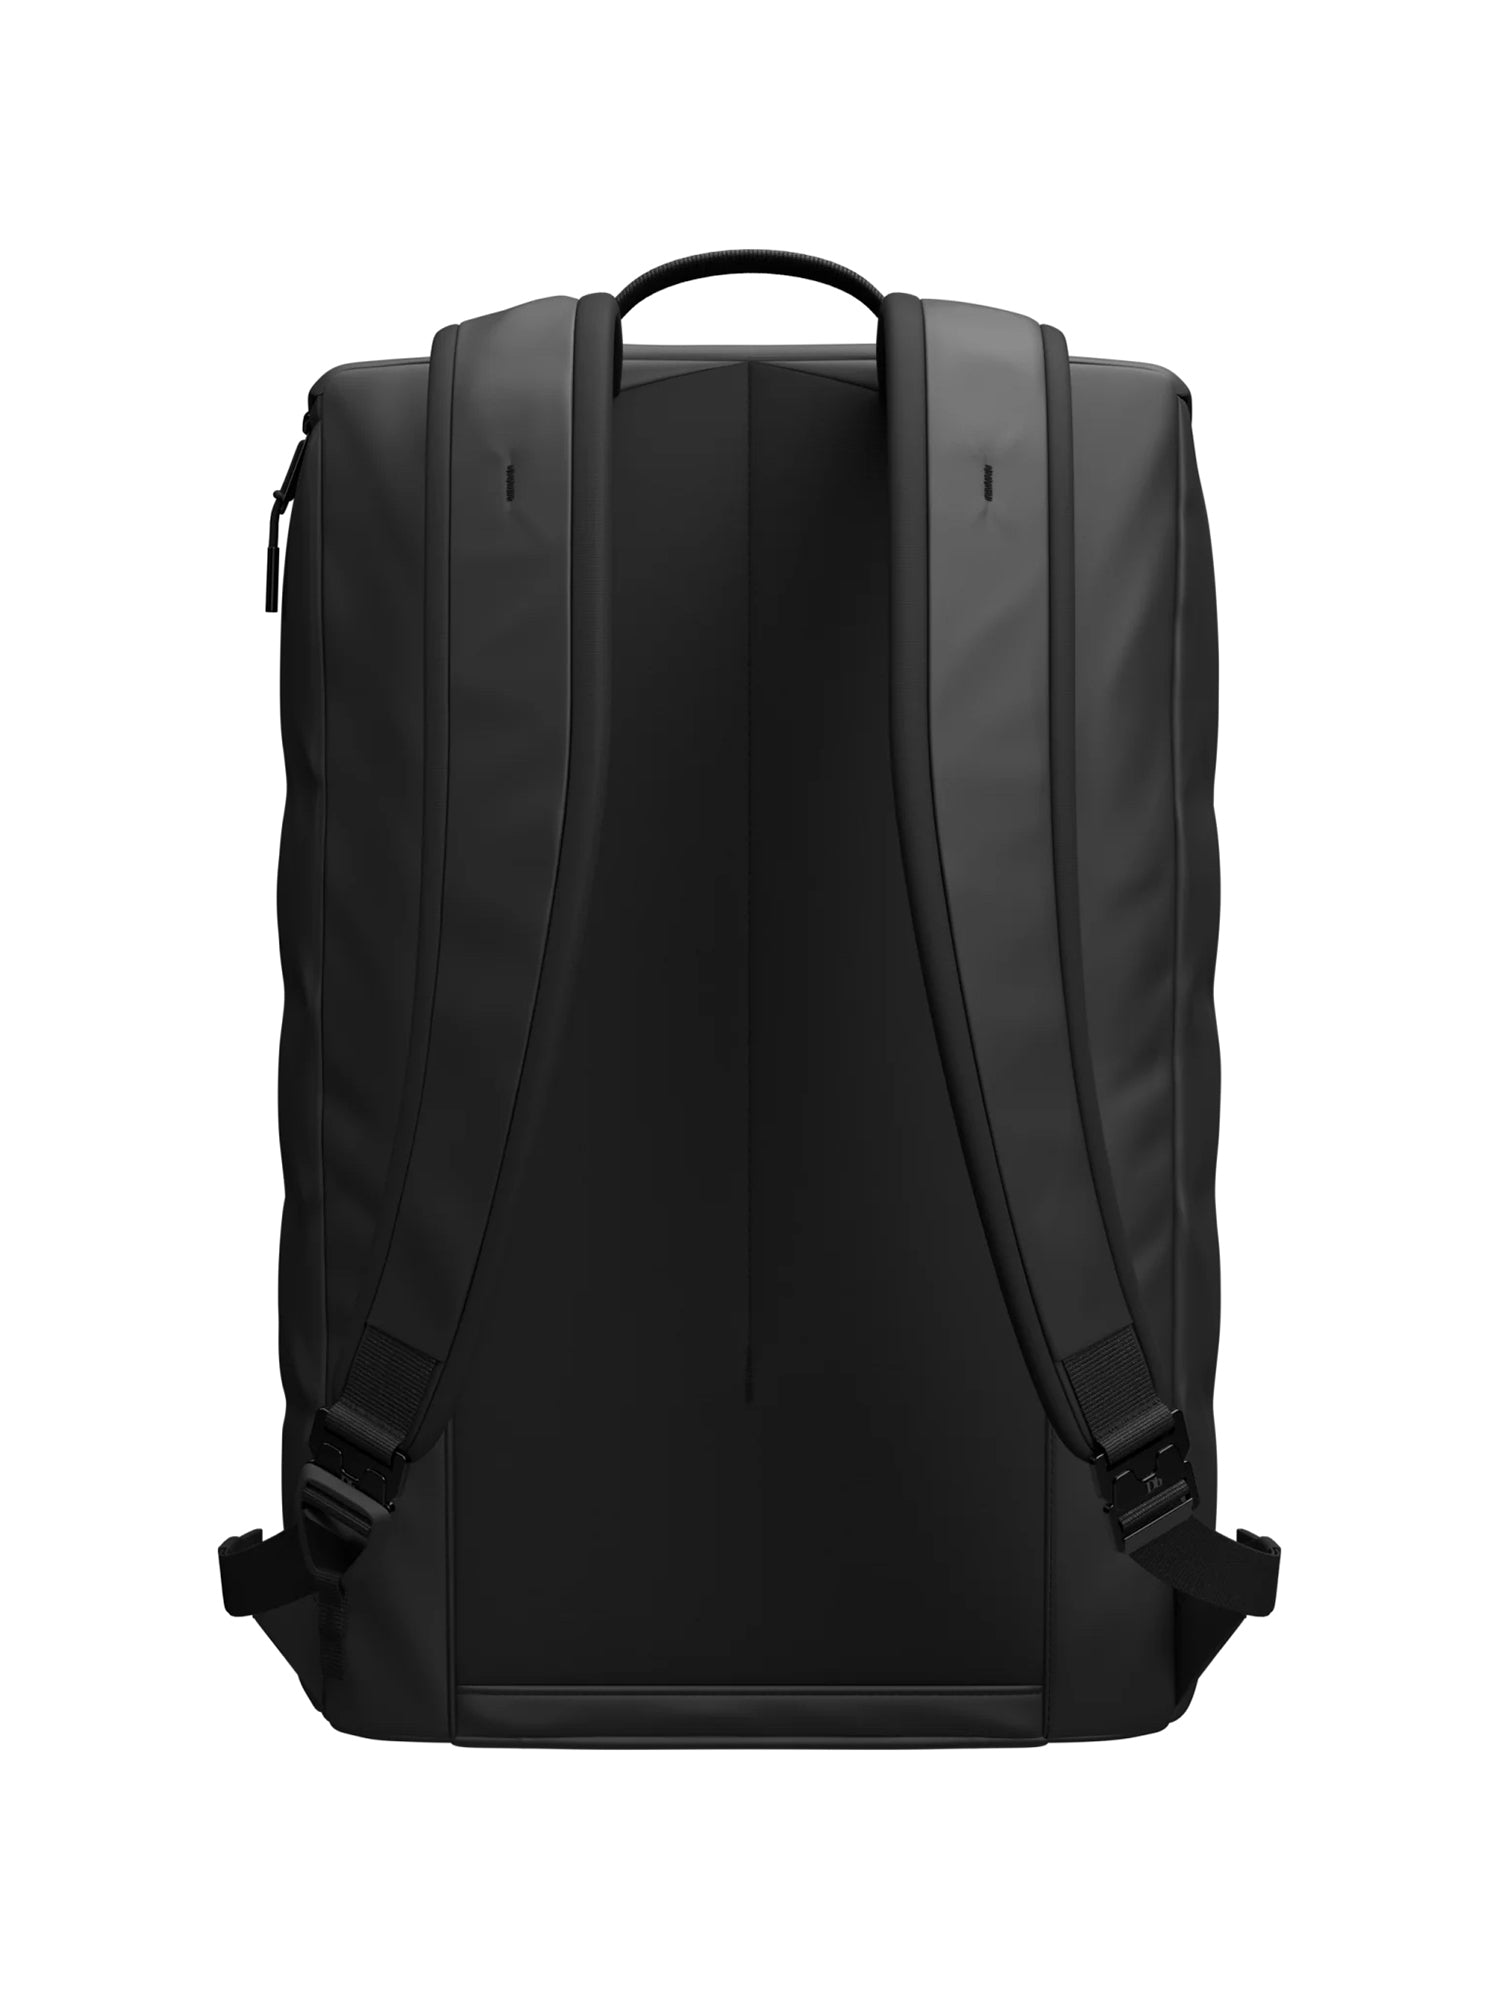 The Hugger Base Backpack 15L